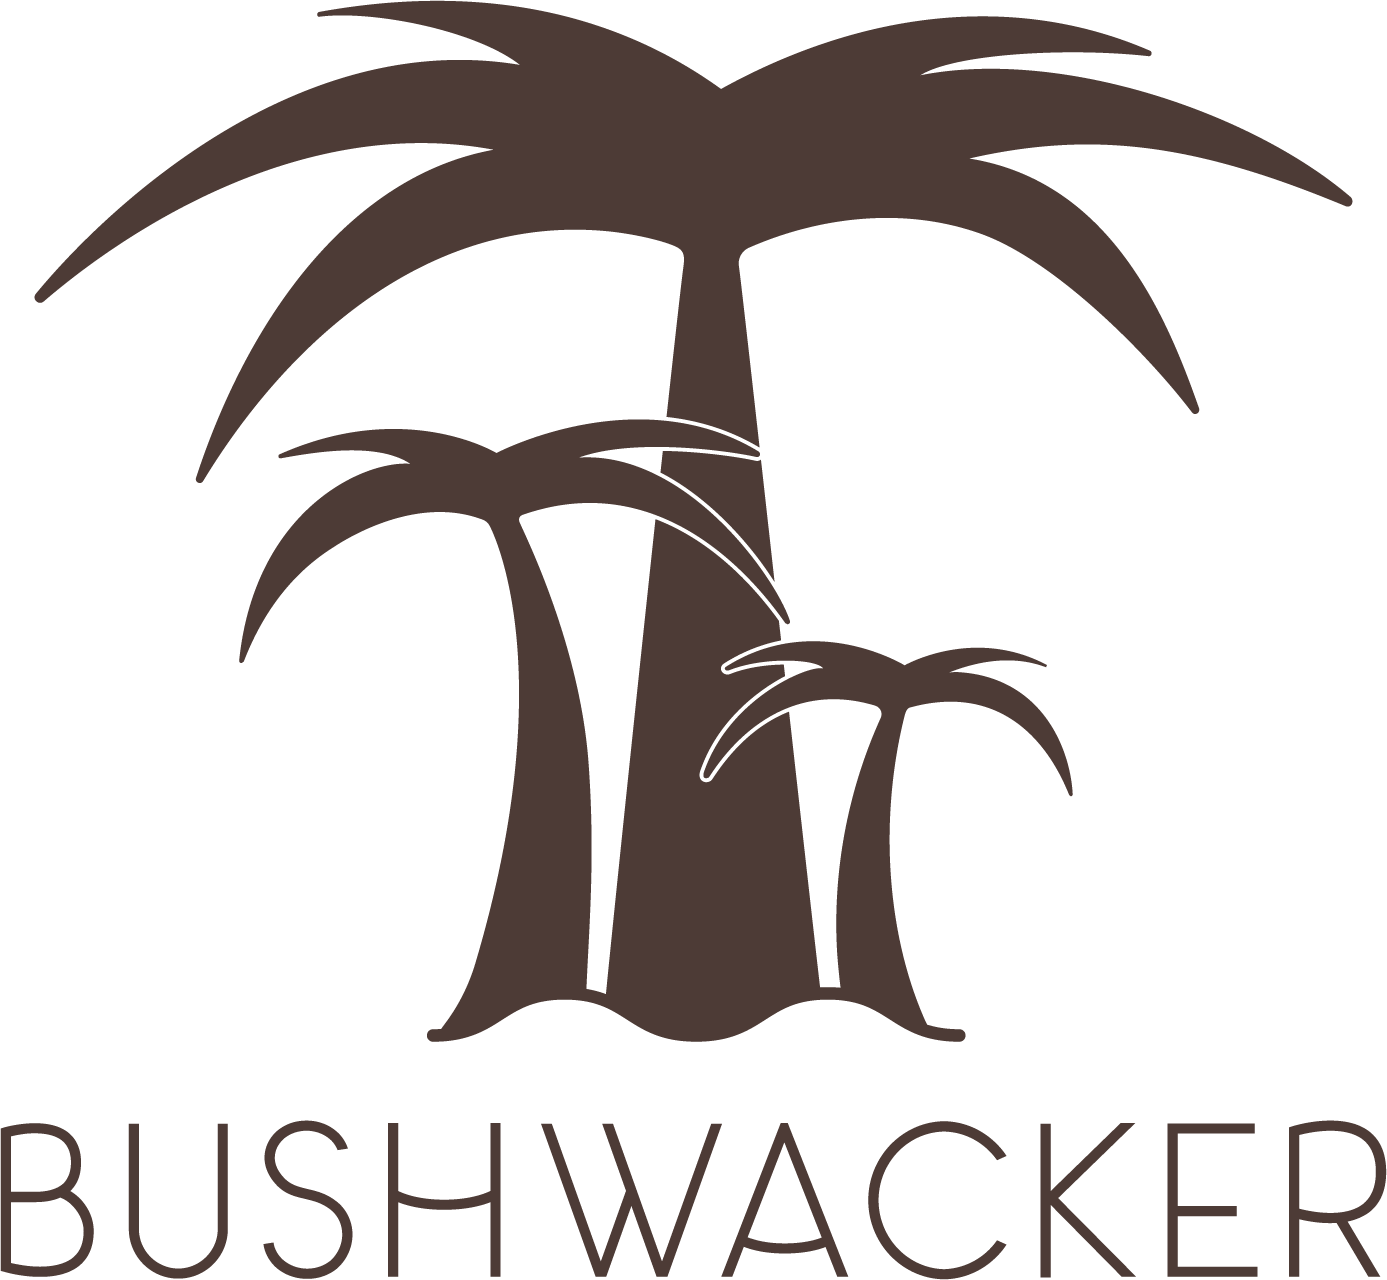     Bushwacker